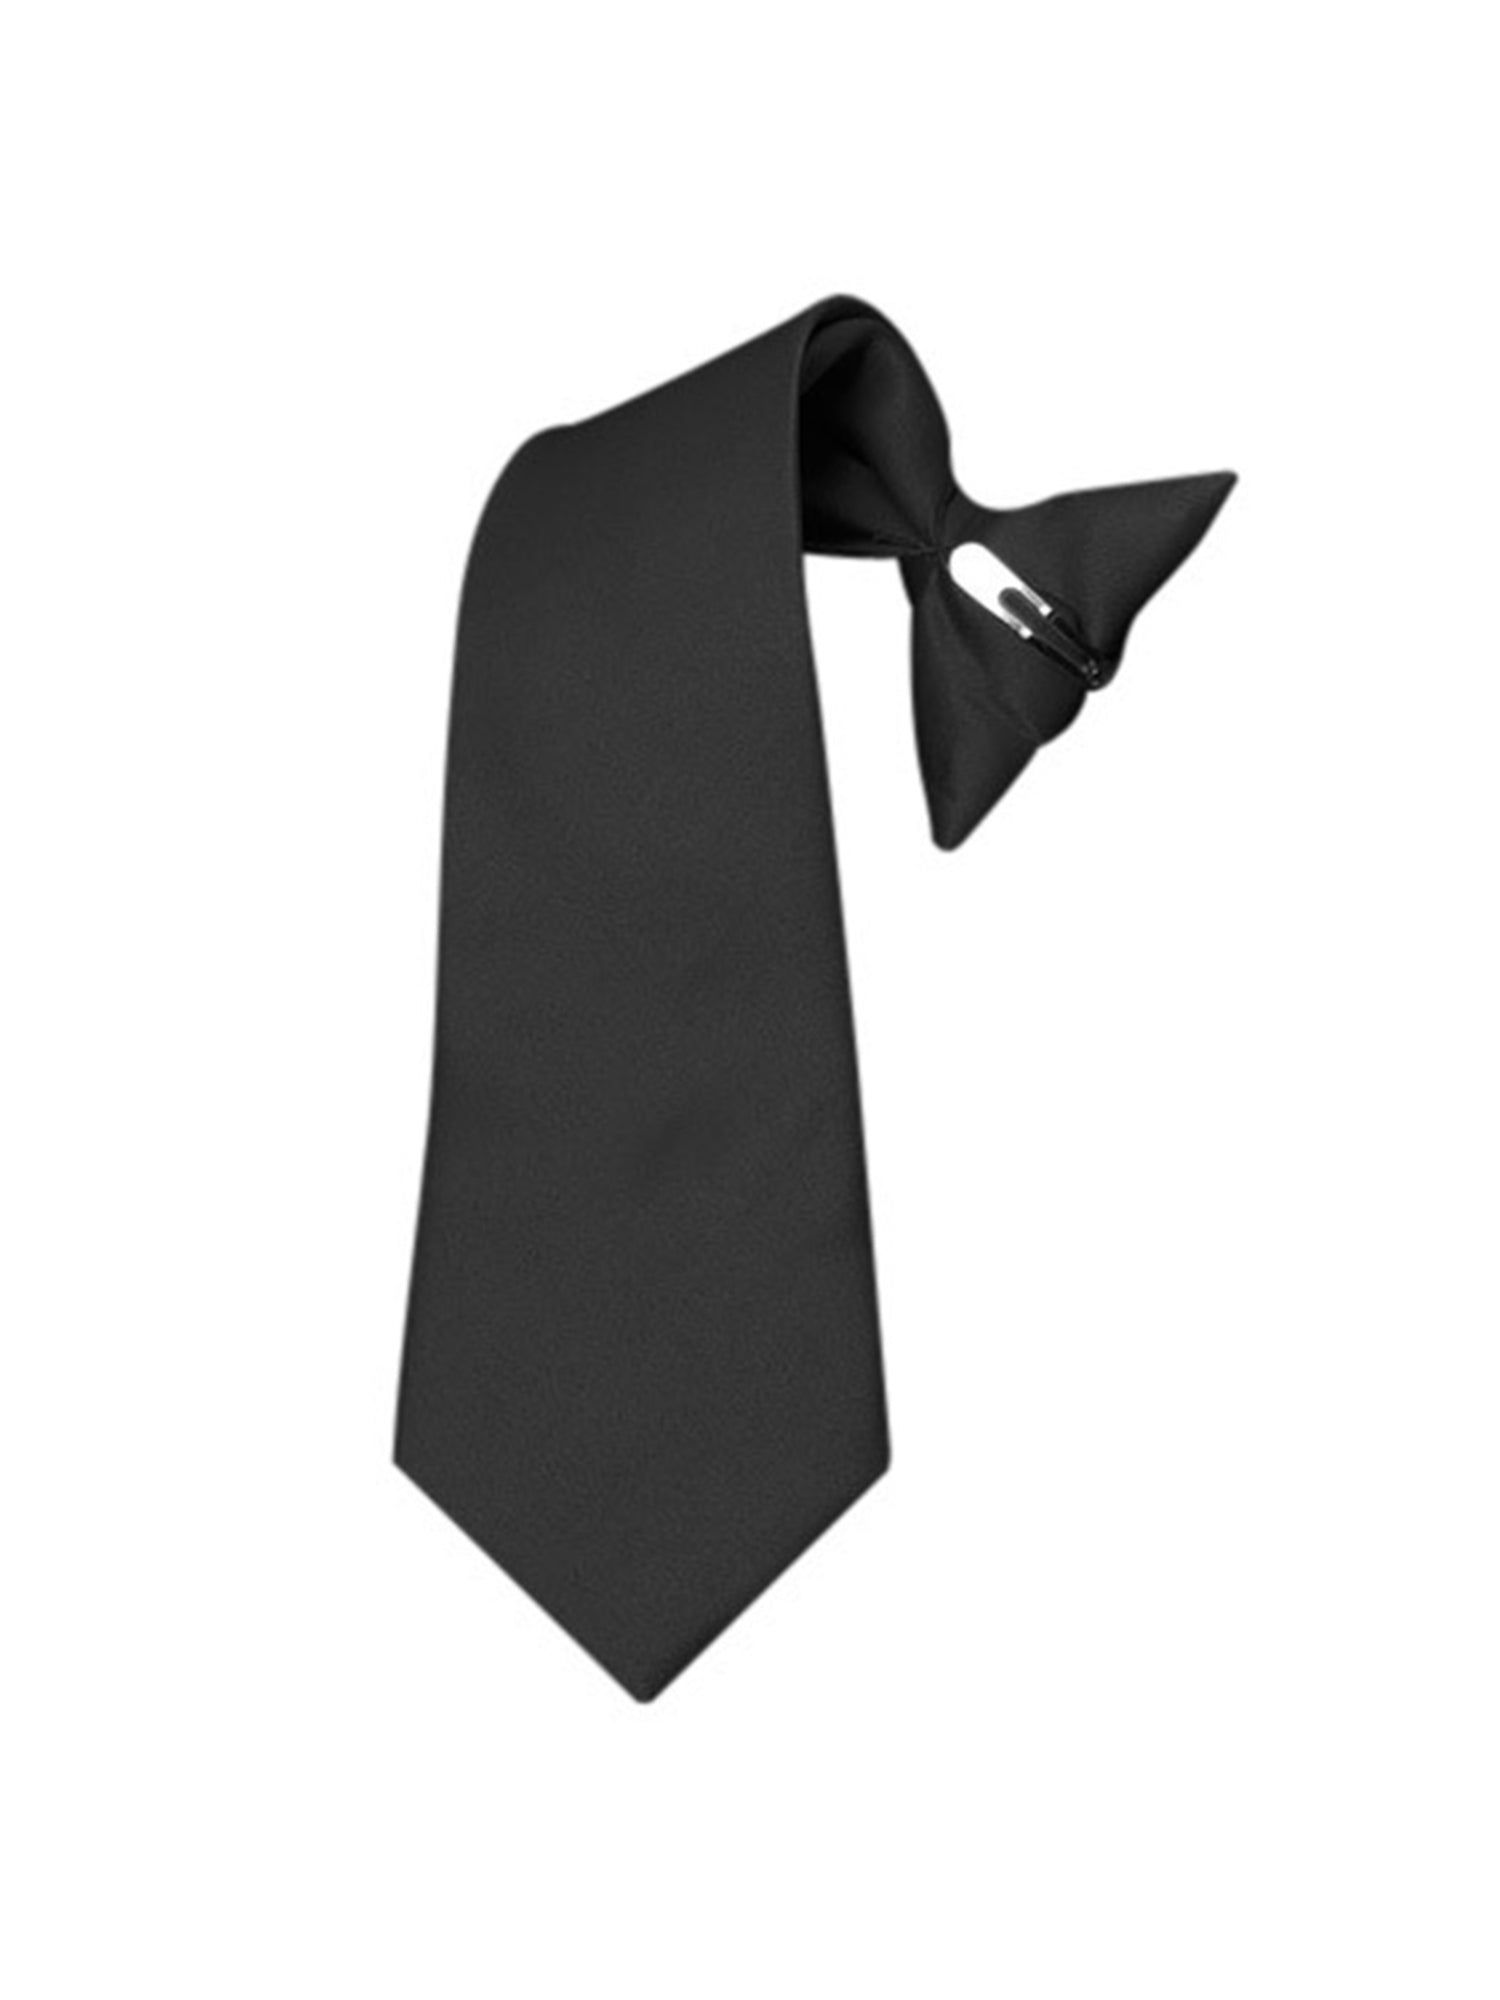 Boy's Black Solid Color 14" Pre-tied Clip On Neck Tie Neck Tie Alexander Logan Black 14" x 2.5" 